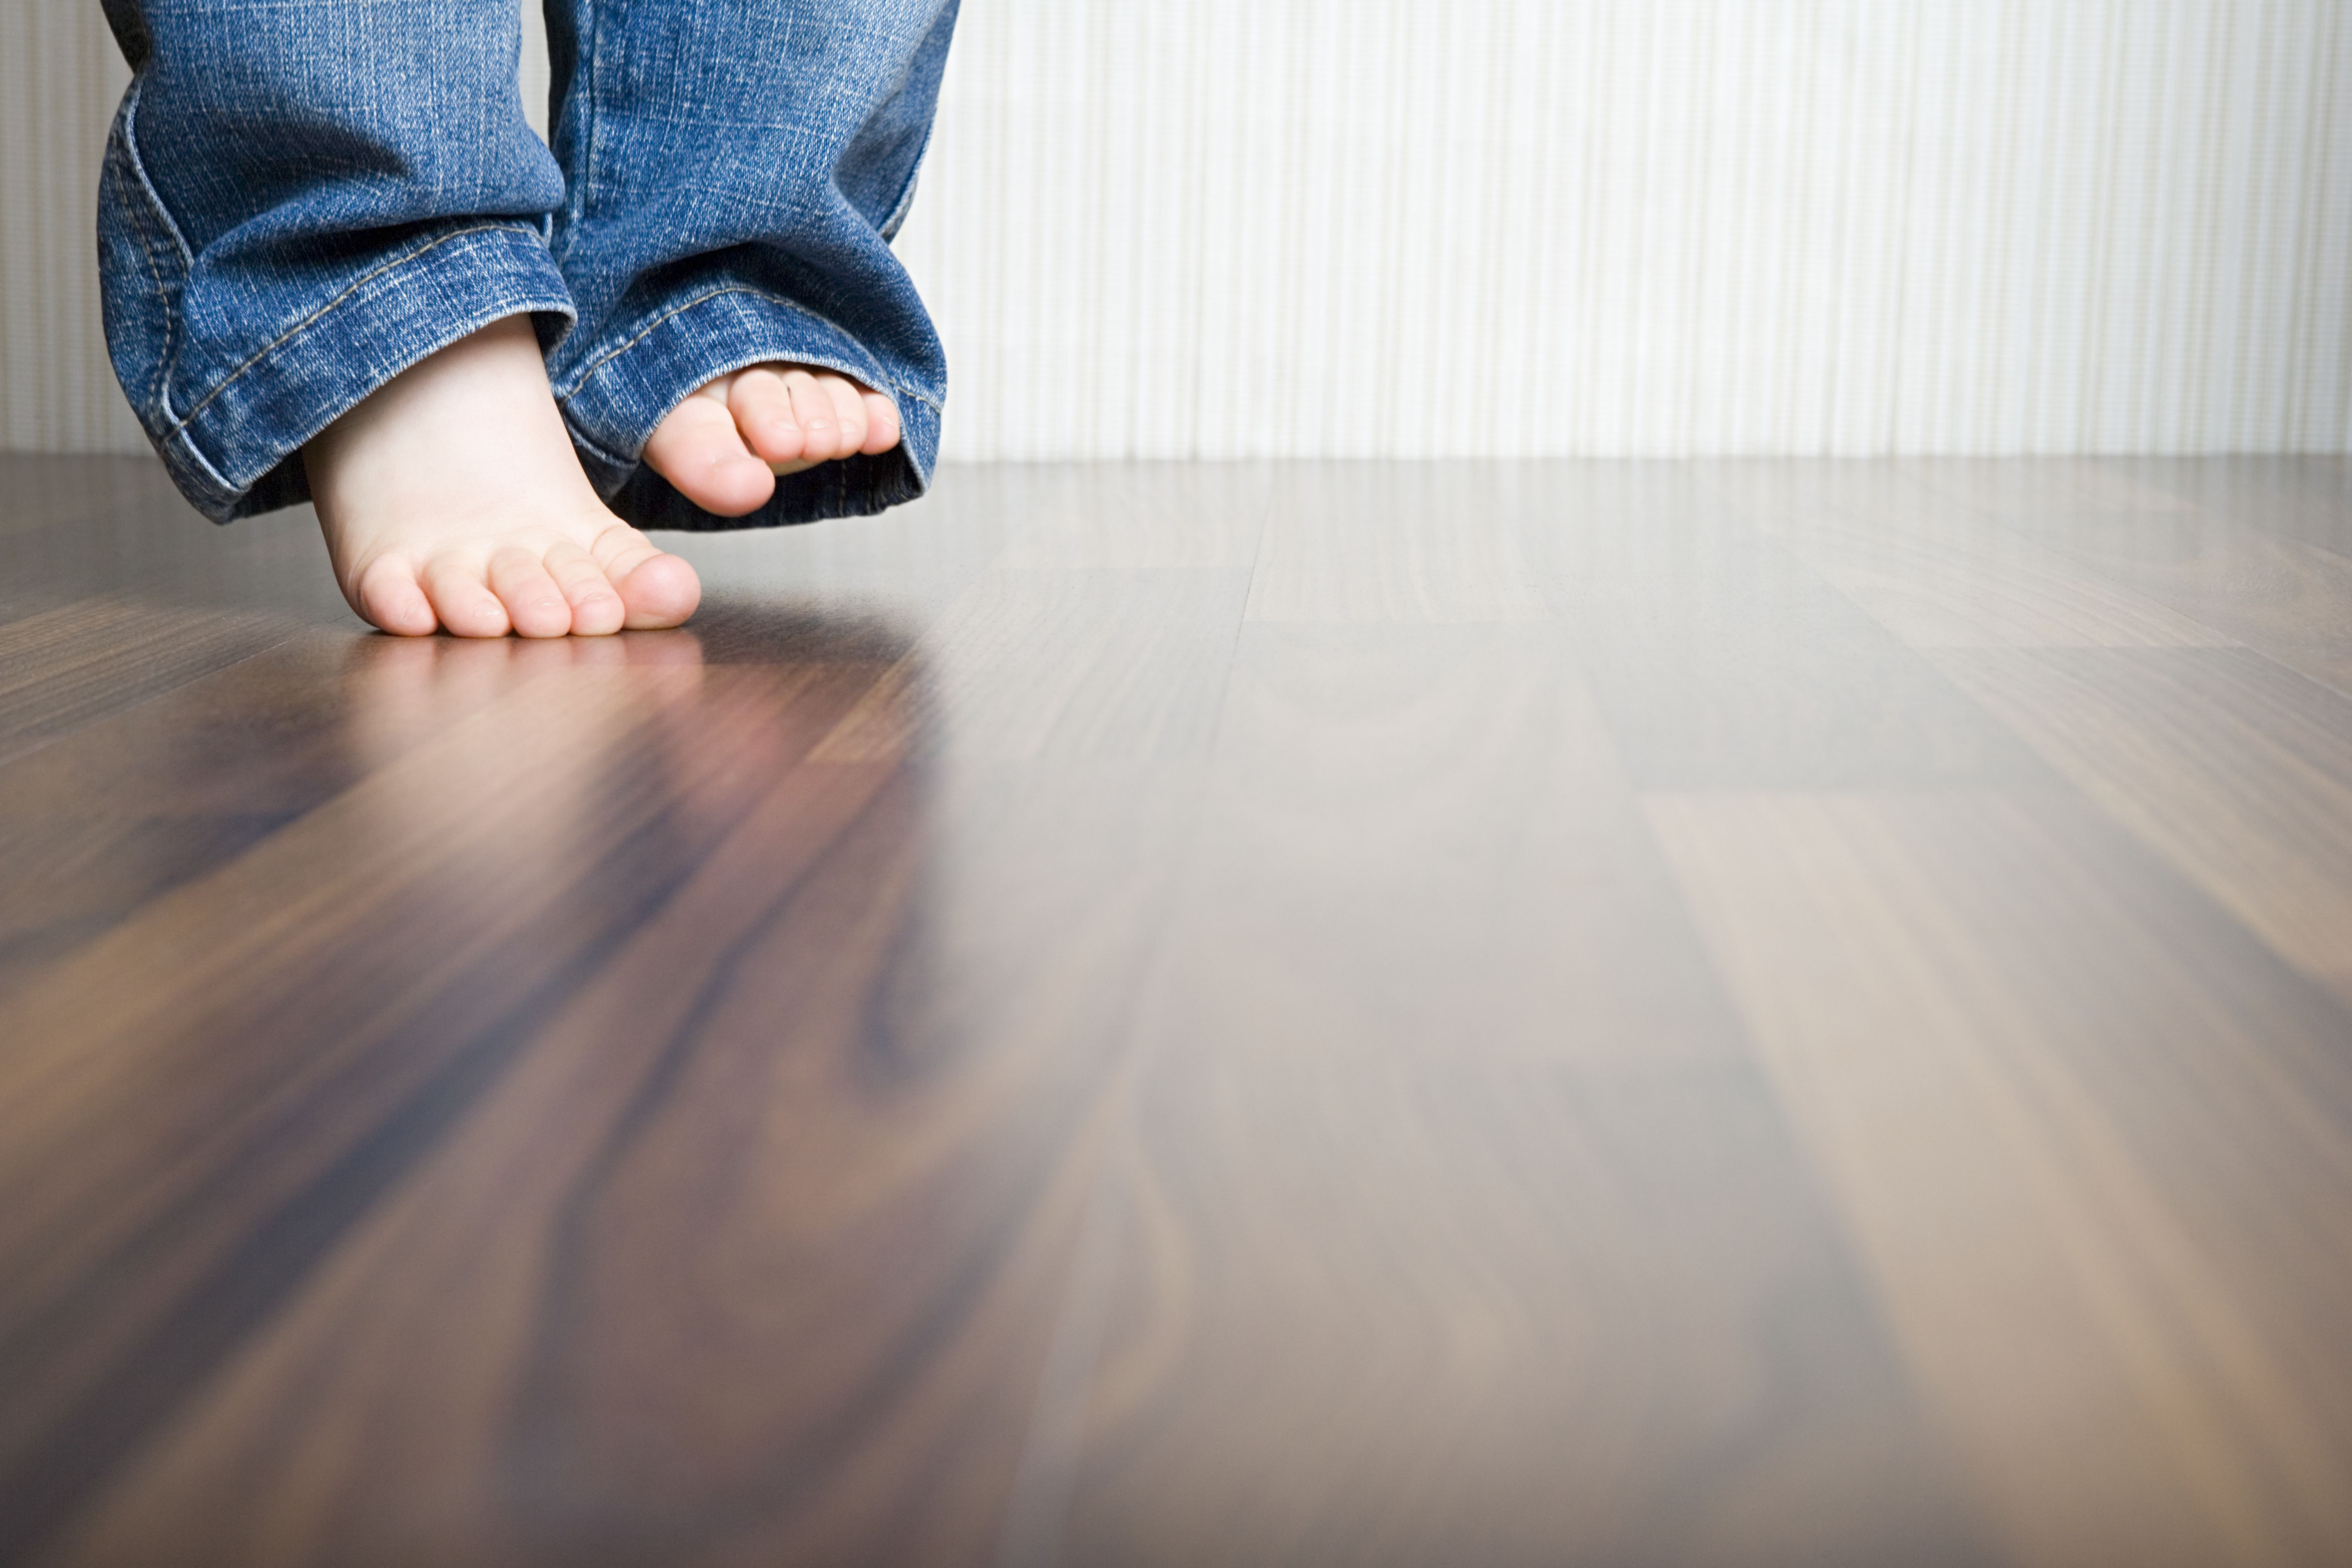 12 Best Repair Kit for Hardwood Floor 2022 free download repair kit for hardwood floor of how to clean hardwood floors best way to clean wood flooring with regard to 1512149908 gettyimages 75403973